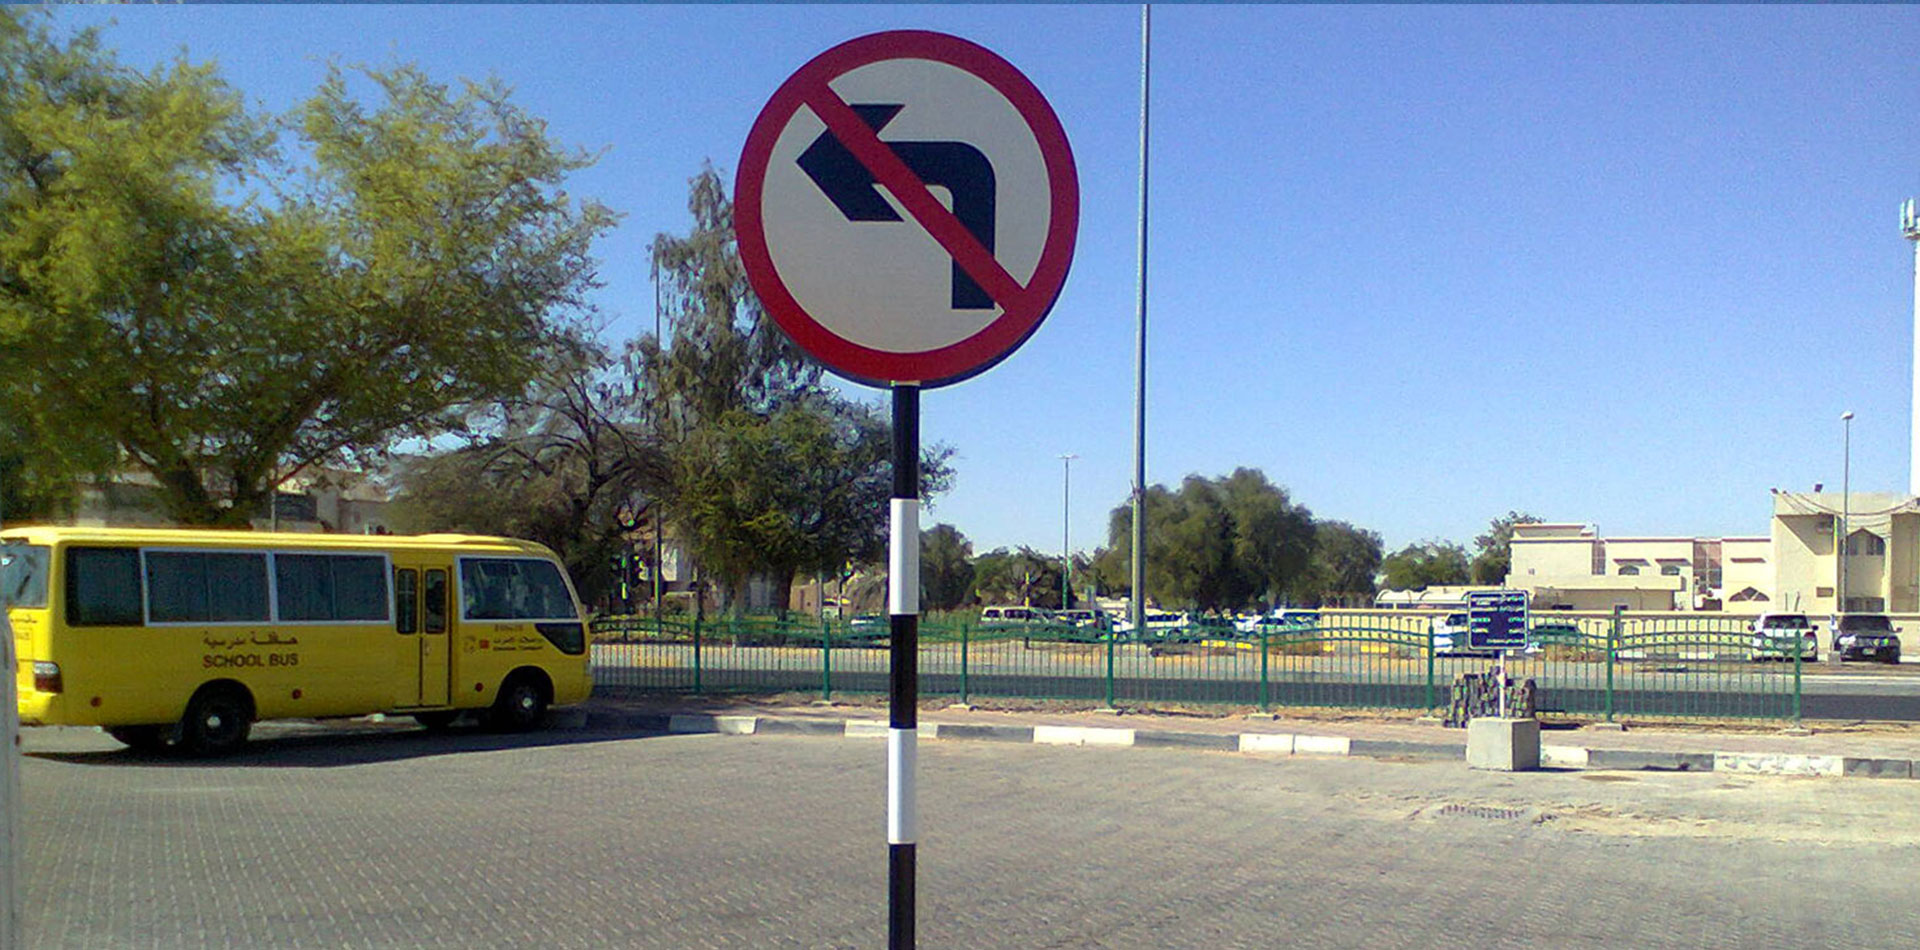 Warning Signage indicating left turn is prohibited